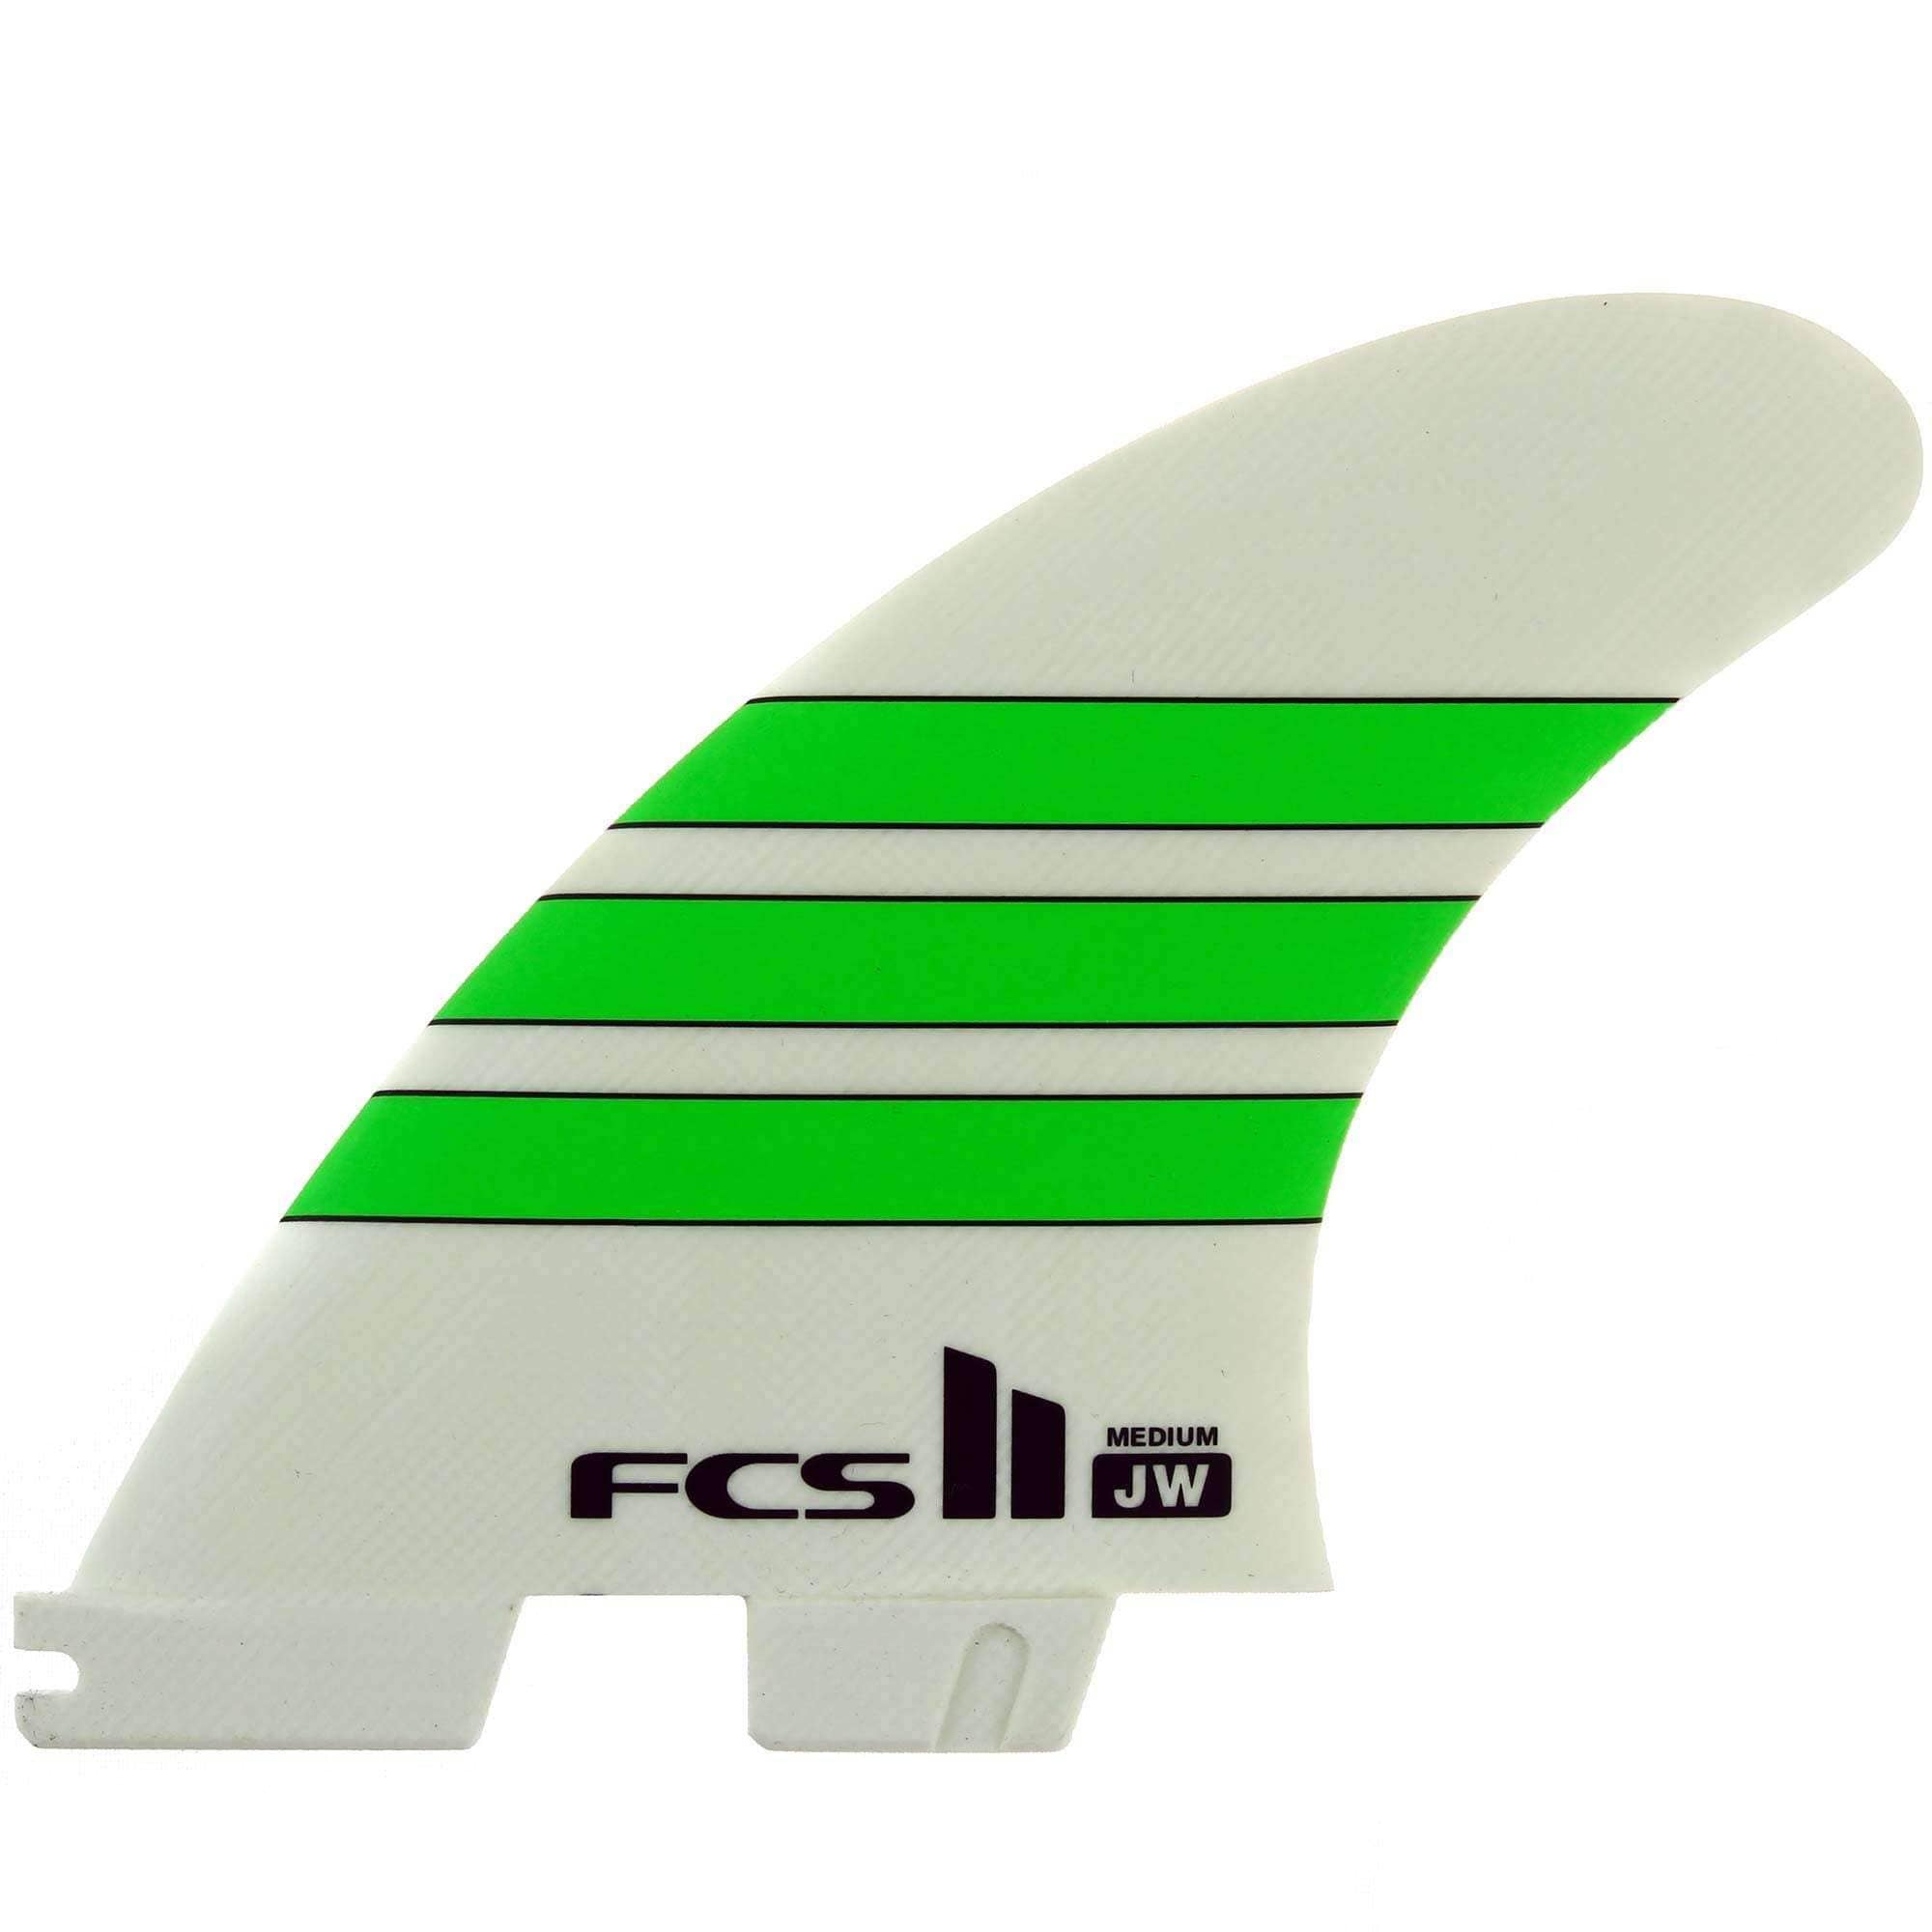 FCS II JW PG Medium Tri Fin Set Surfboard Fins White/Green FCS II Fins by FCS Medium Fins